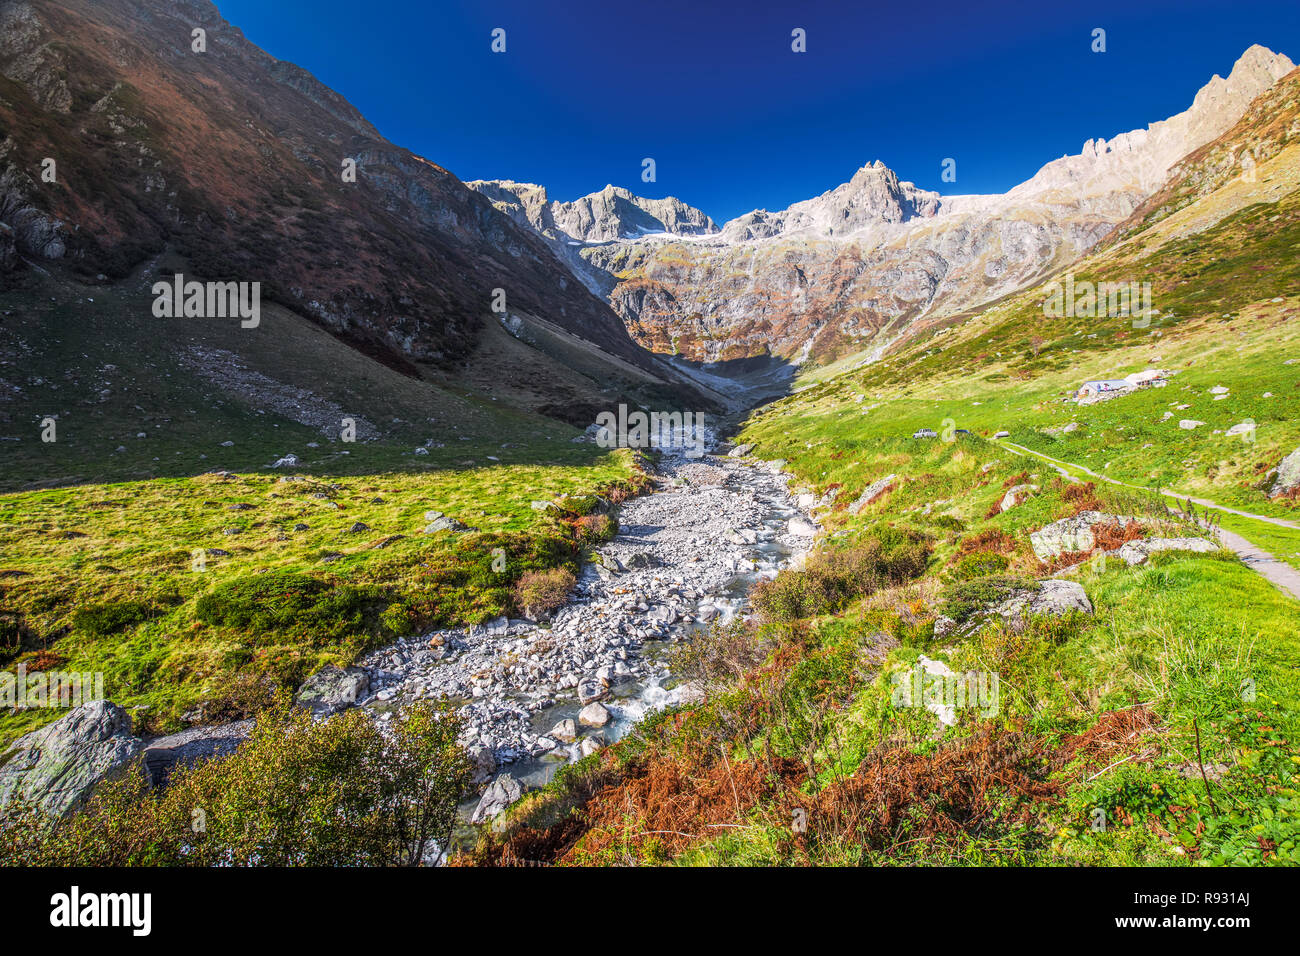 Río Gorezmettlenbach con Alpes Suizos (Wandenhorn, Grassengrat y Chlo Spannort) en Sustenpass, Suiza, Europa. Foto de stock